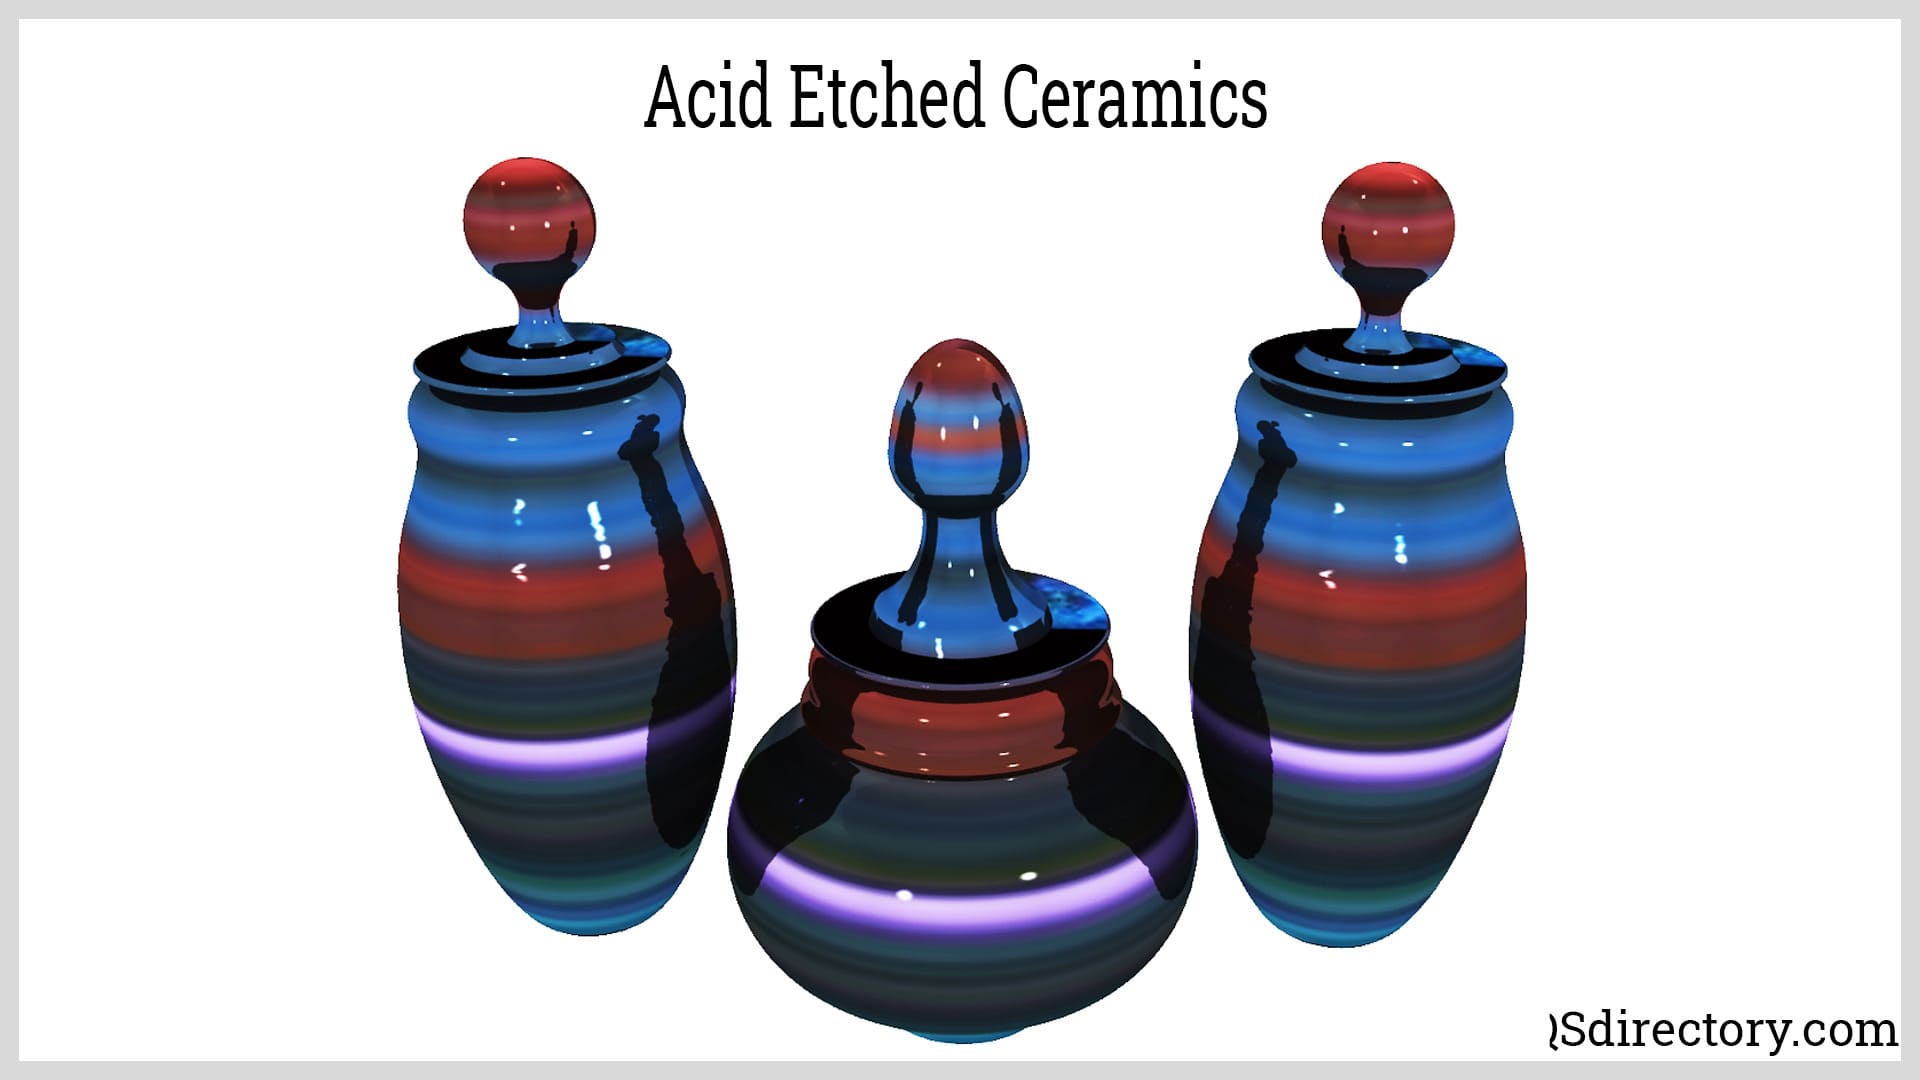 Acid Etched Ceramics